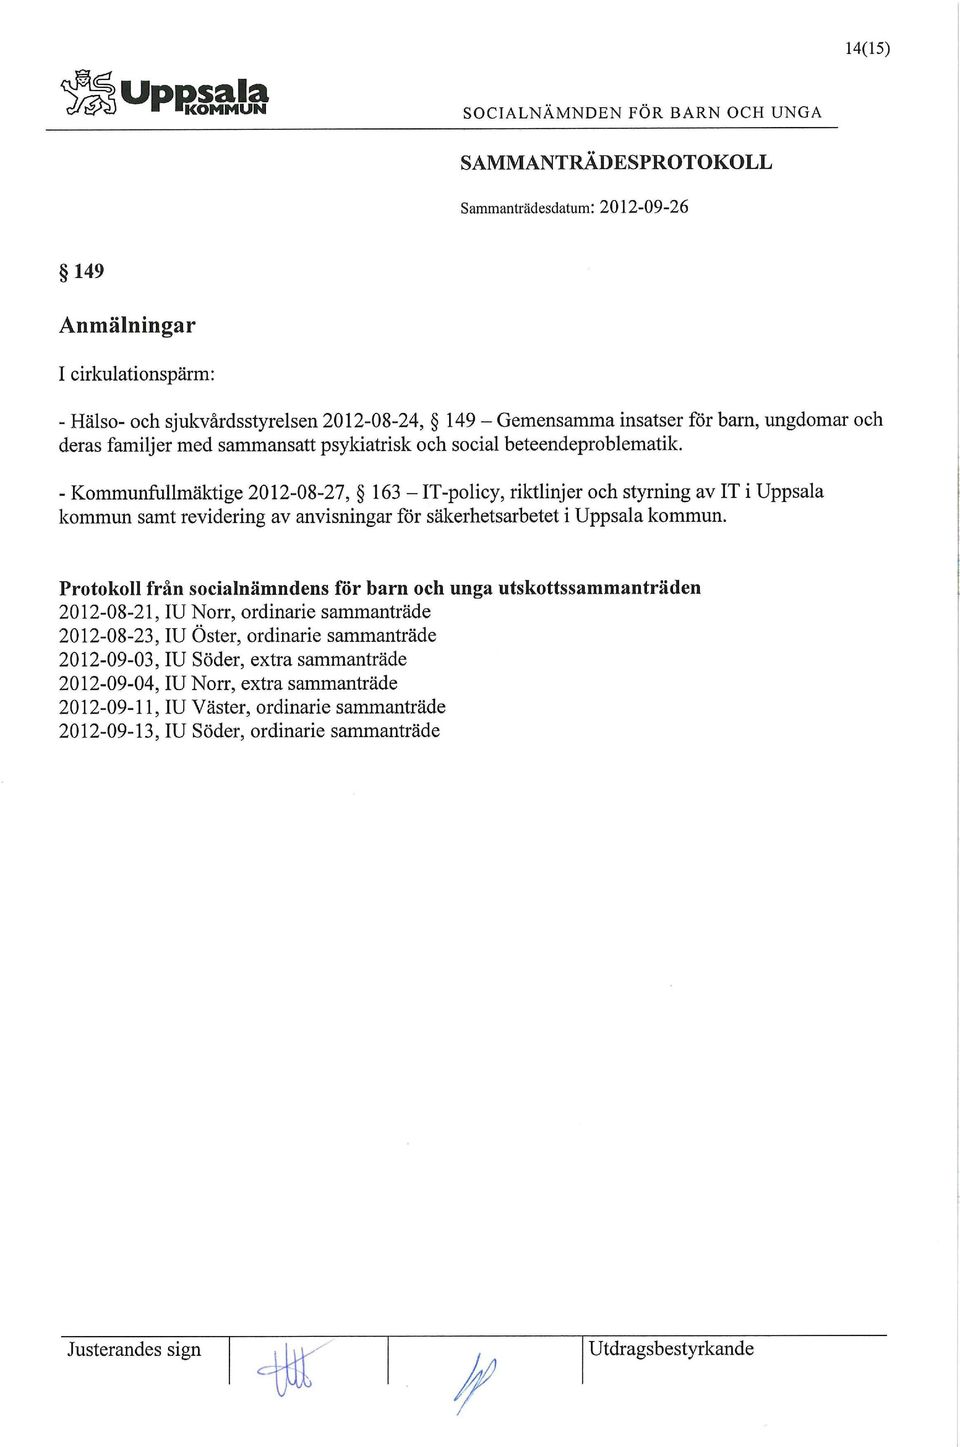 - Kommunfullmäktige 2012-08-27, 163 - IT-policy, riktlinjer och styrning av IT i Uppsala kommun samt revidering av anvisningar för säkerhetsarbetet i Uppsala kommun.